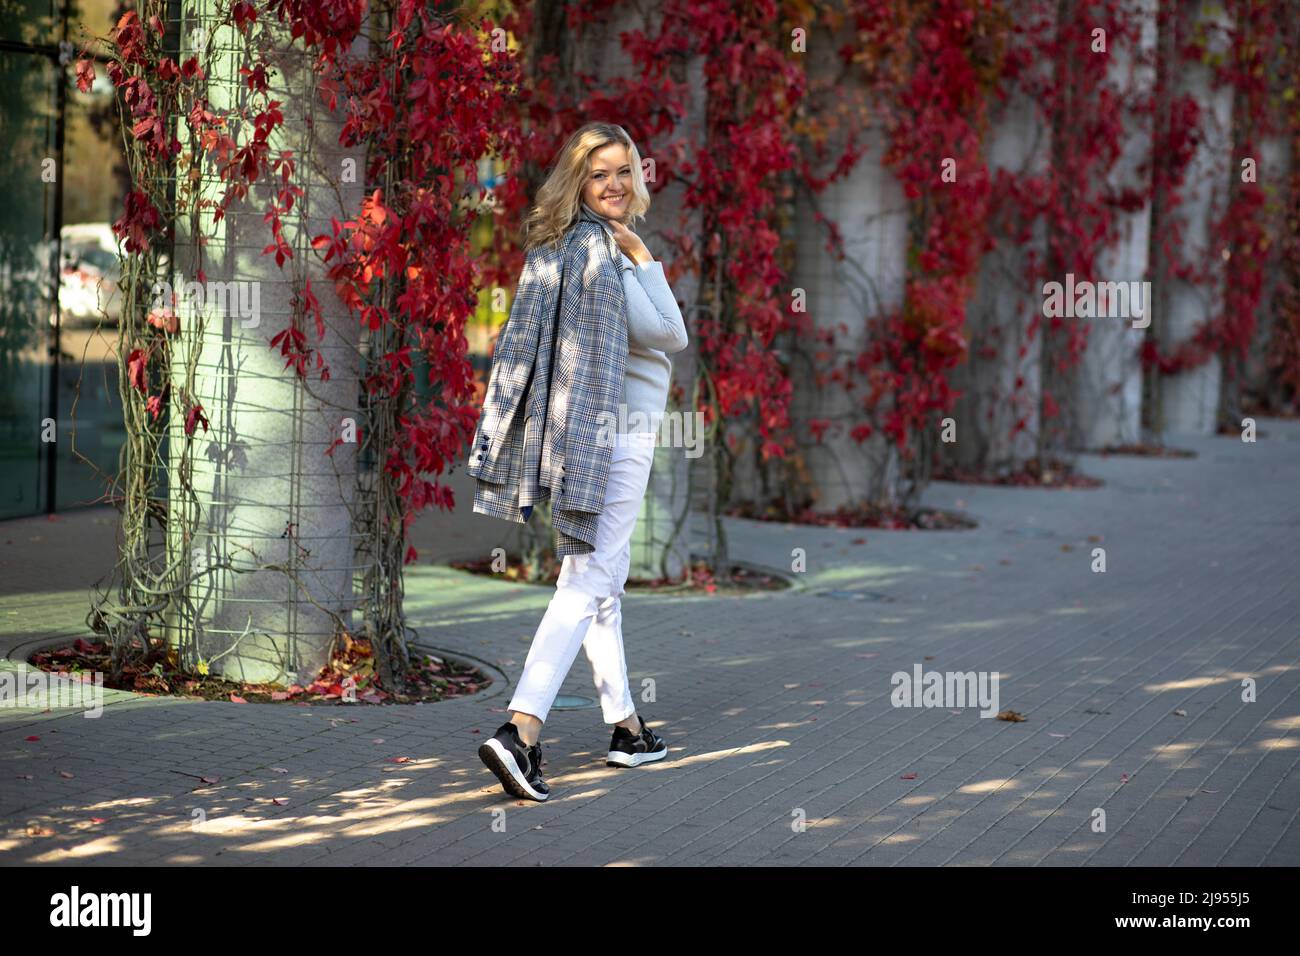 Atractivo rubio de 35-40 años de edad mira alrededor de caminar por la ciudad de otoño. Ella está iluminada por rayos de sol y es feliz disfrutando de un hermoso día Foto de stock